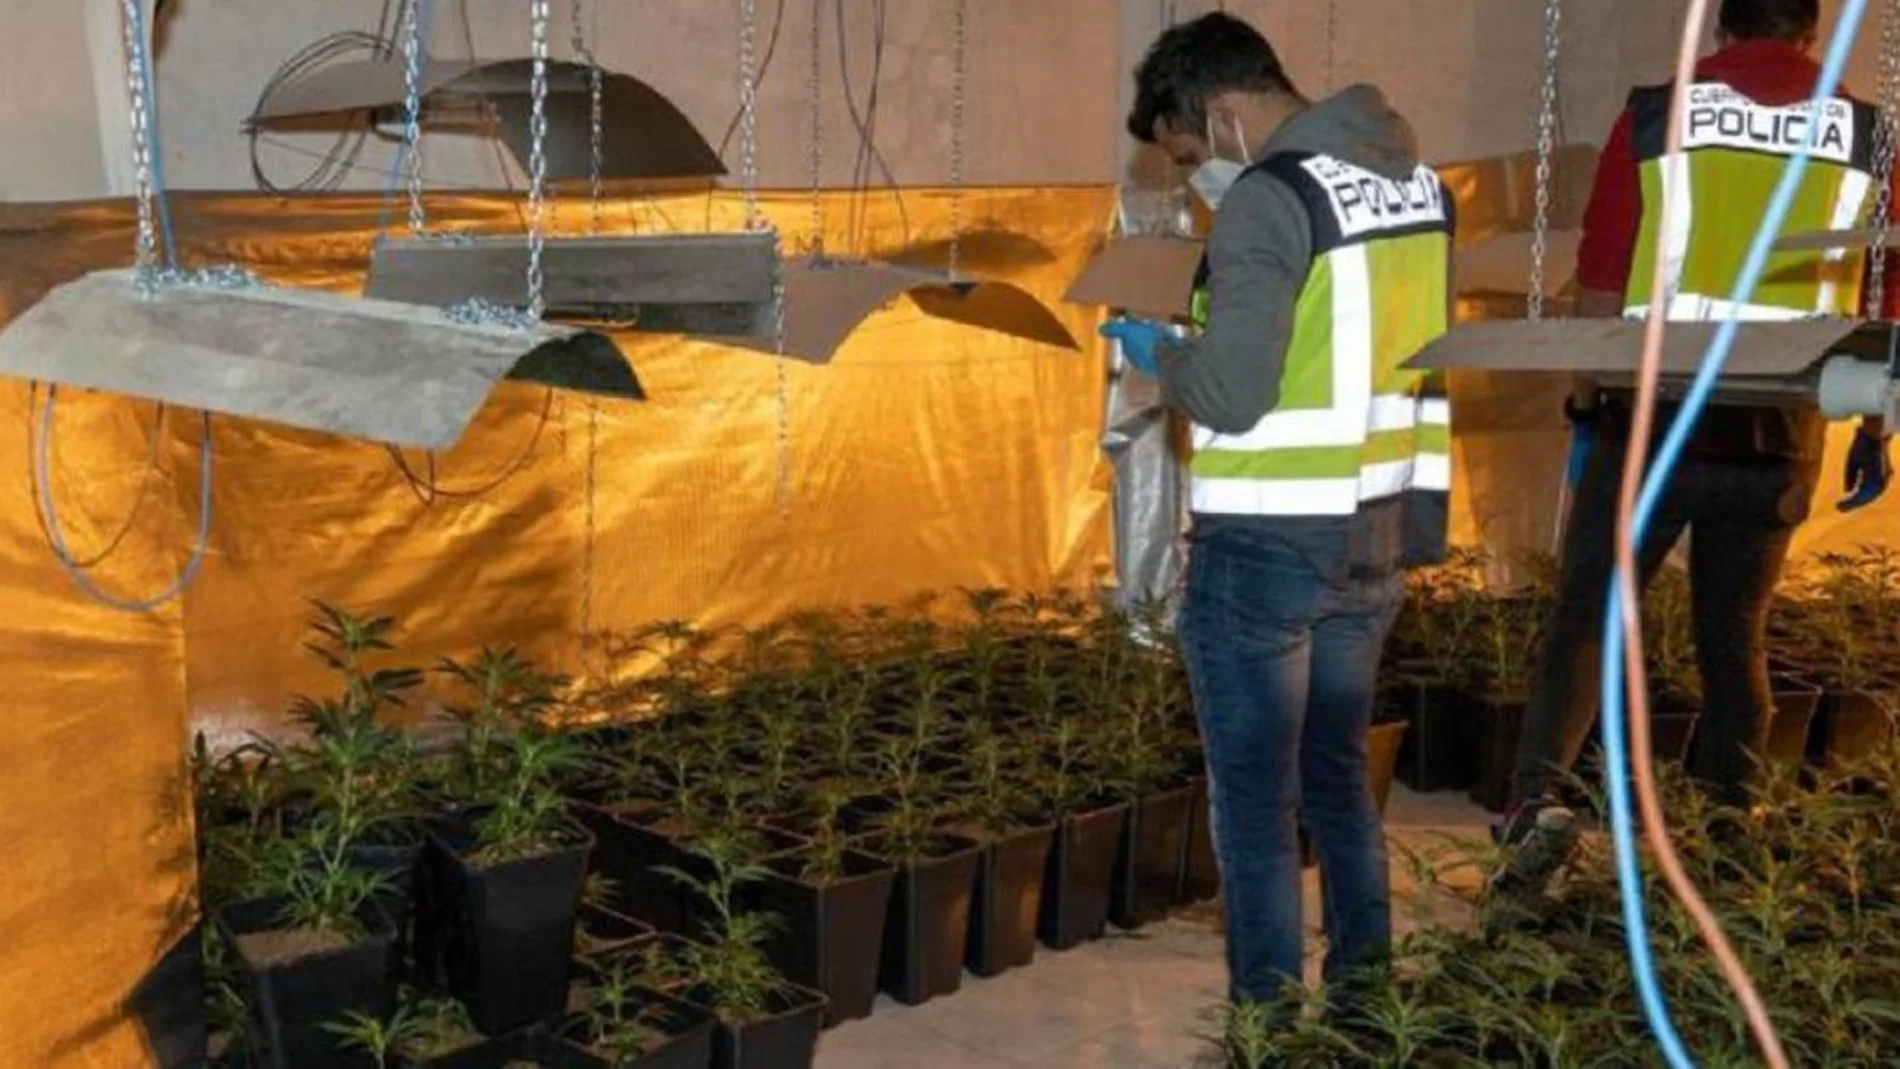 Plantación de marihuana en un garaje de San Sebastián de los Reyes